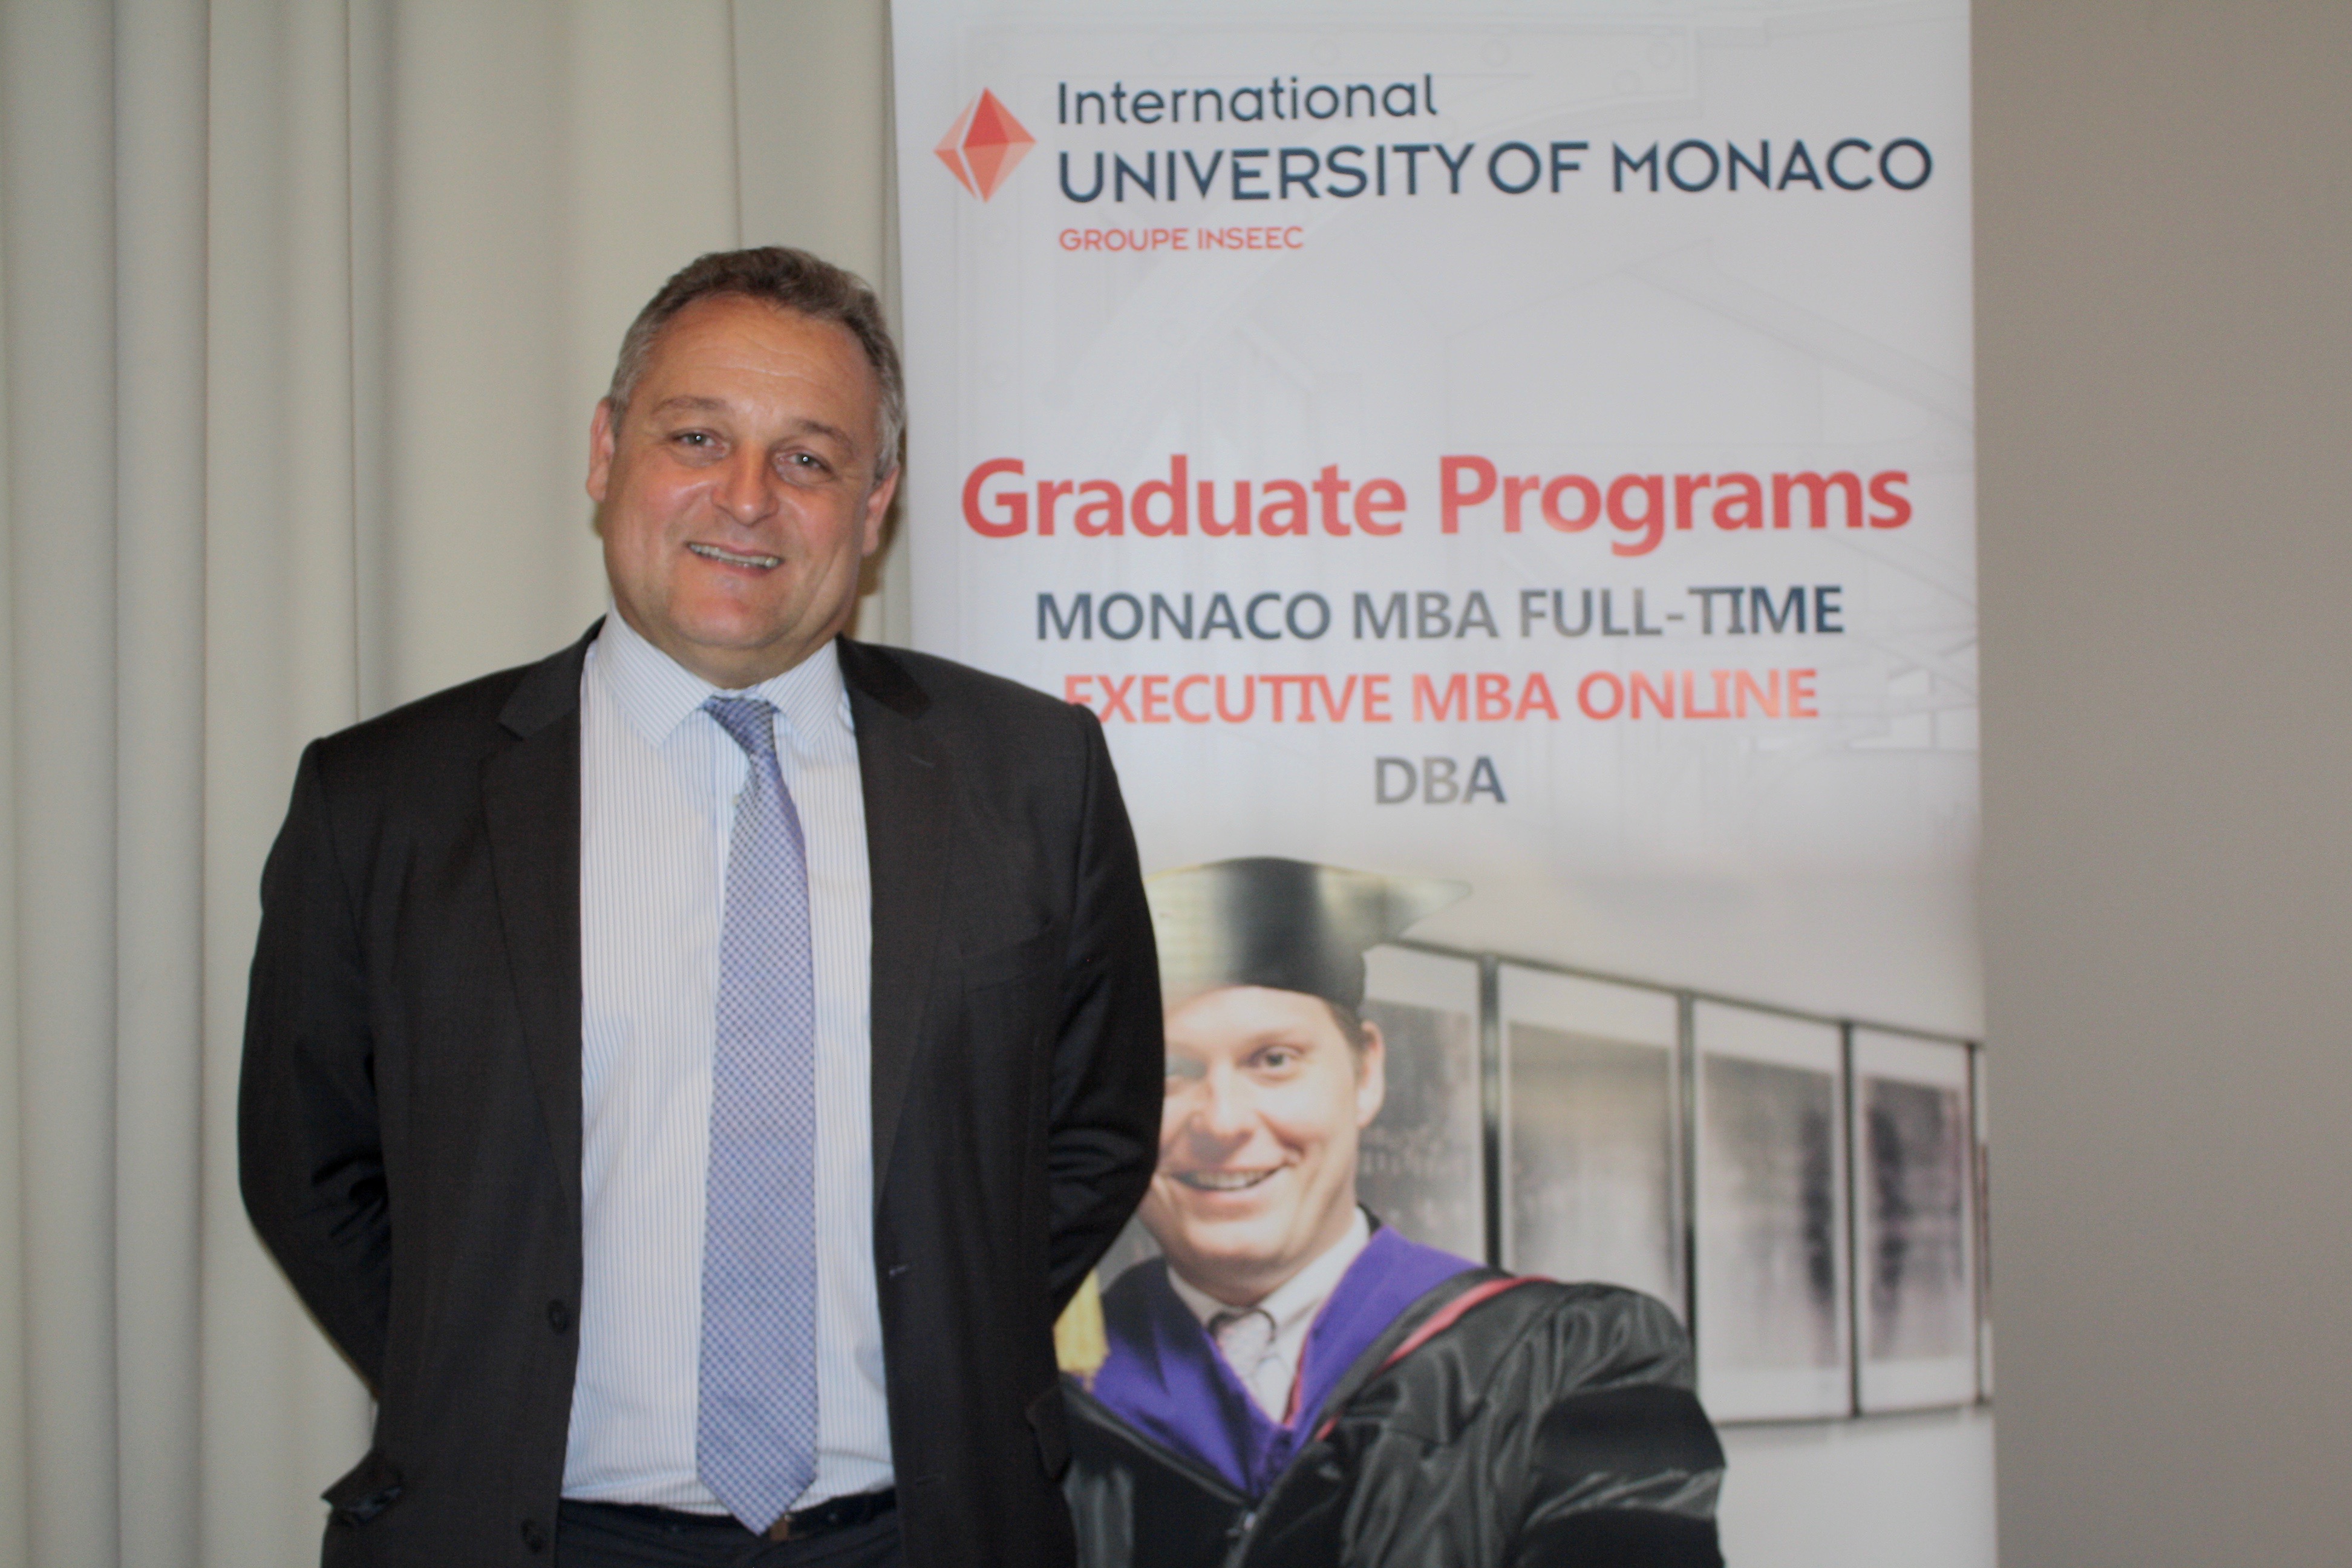 C’est l’heure du bilan pour l’International University of Monaco